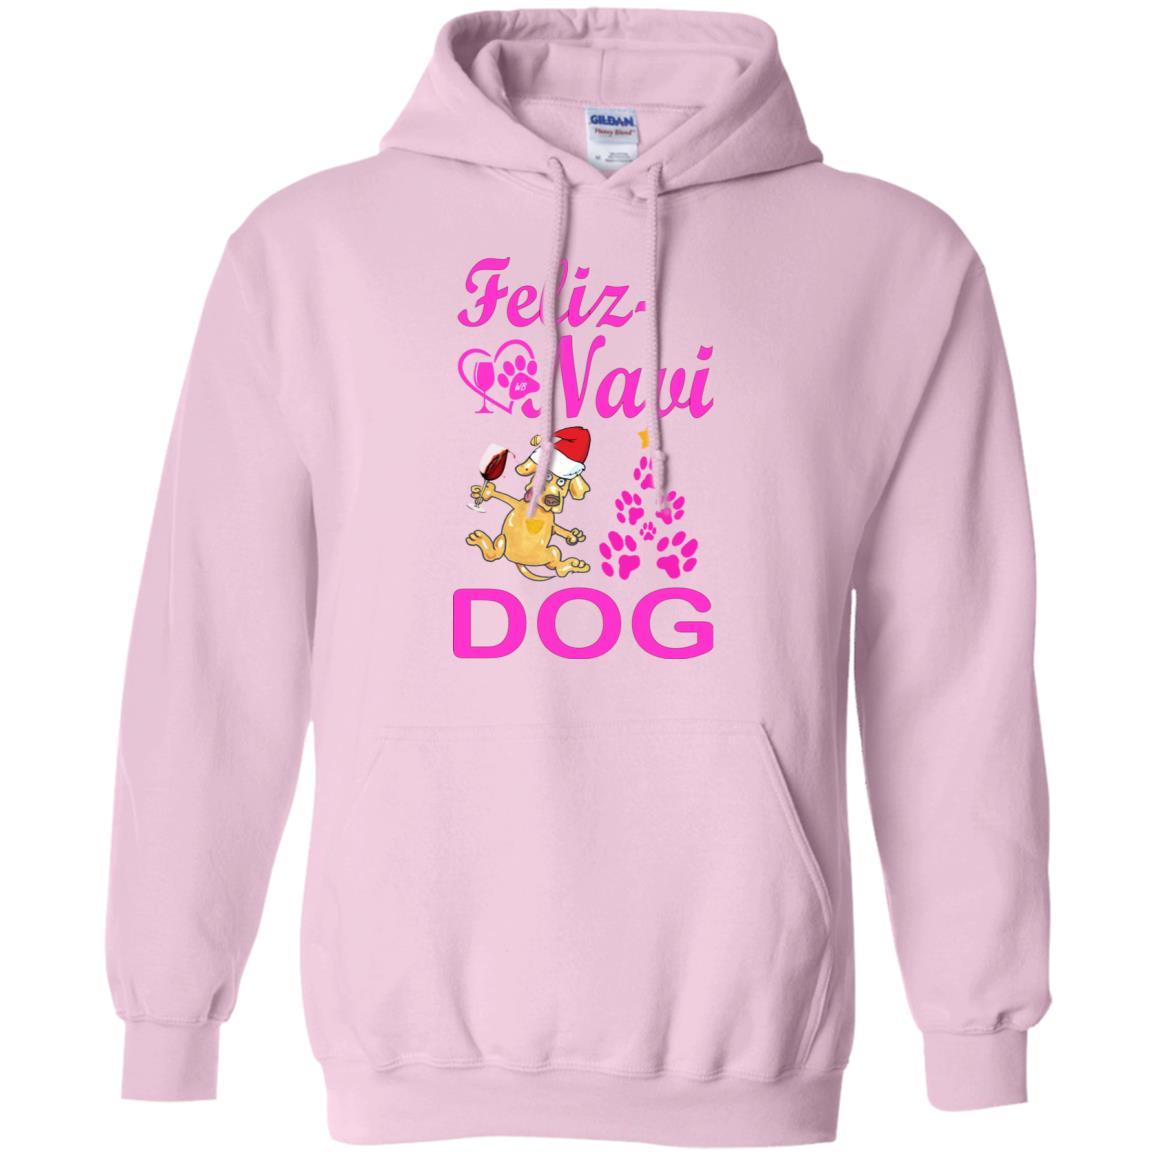 Sweatshirts Light Pink / S WineyBitches.Co "Feliz Navi Dog" Pullover Hoodie 8 oz. -Pink Lettering WineyBitchesCo